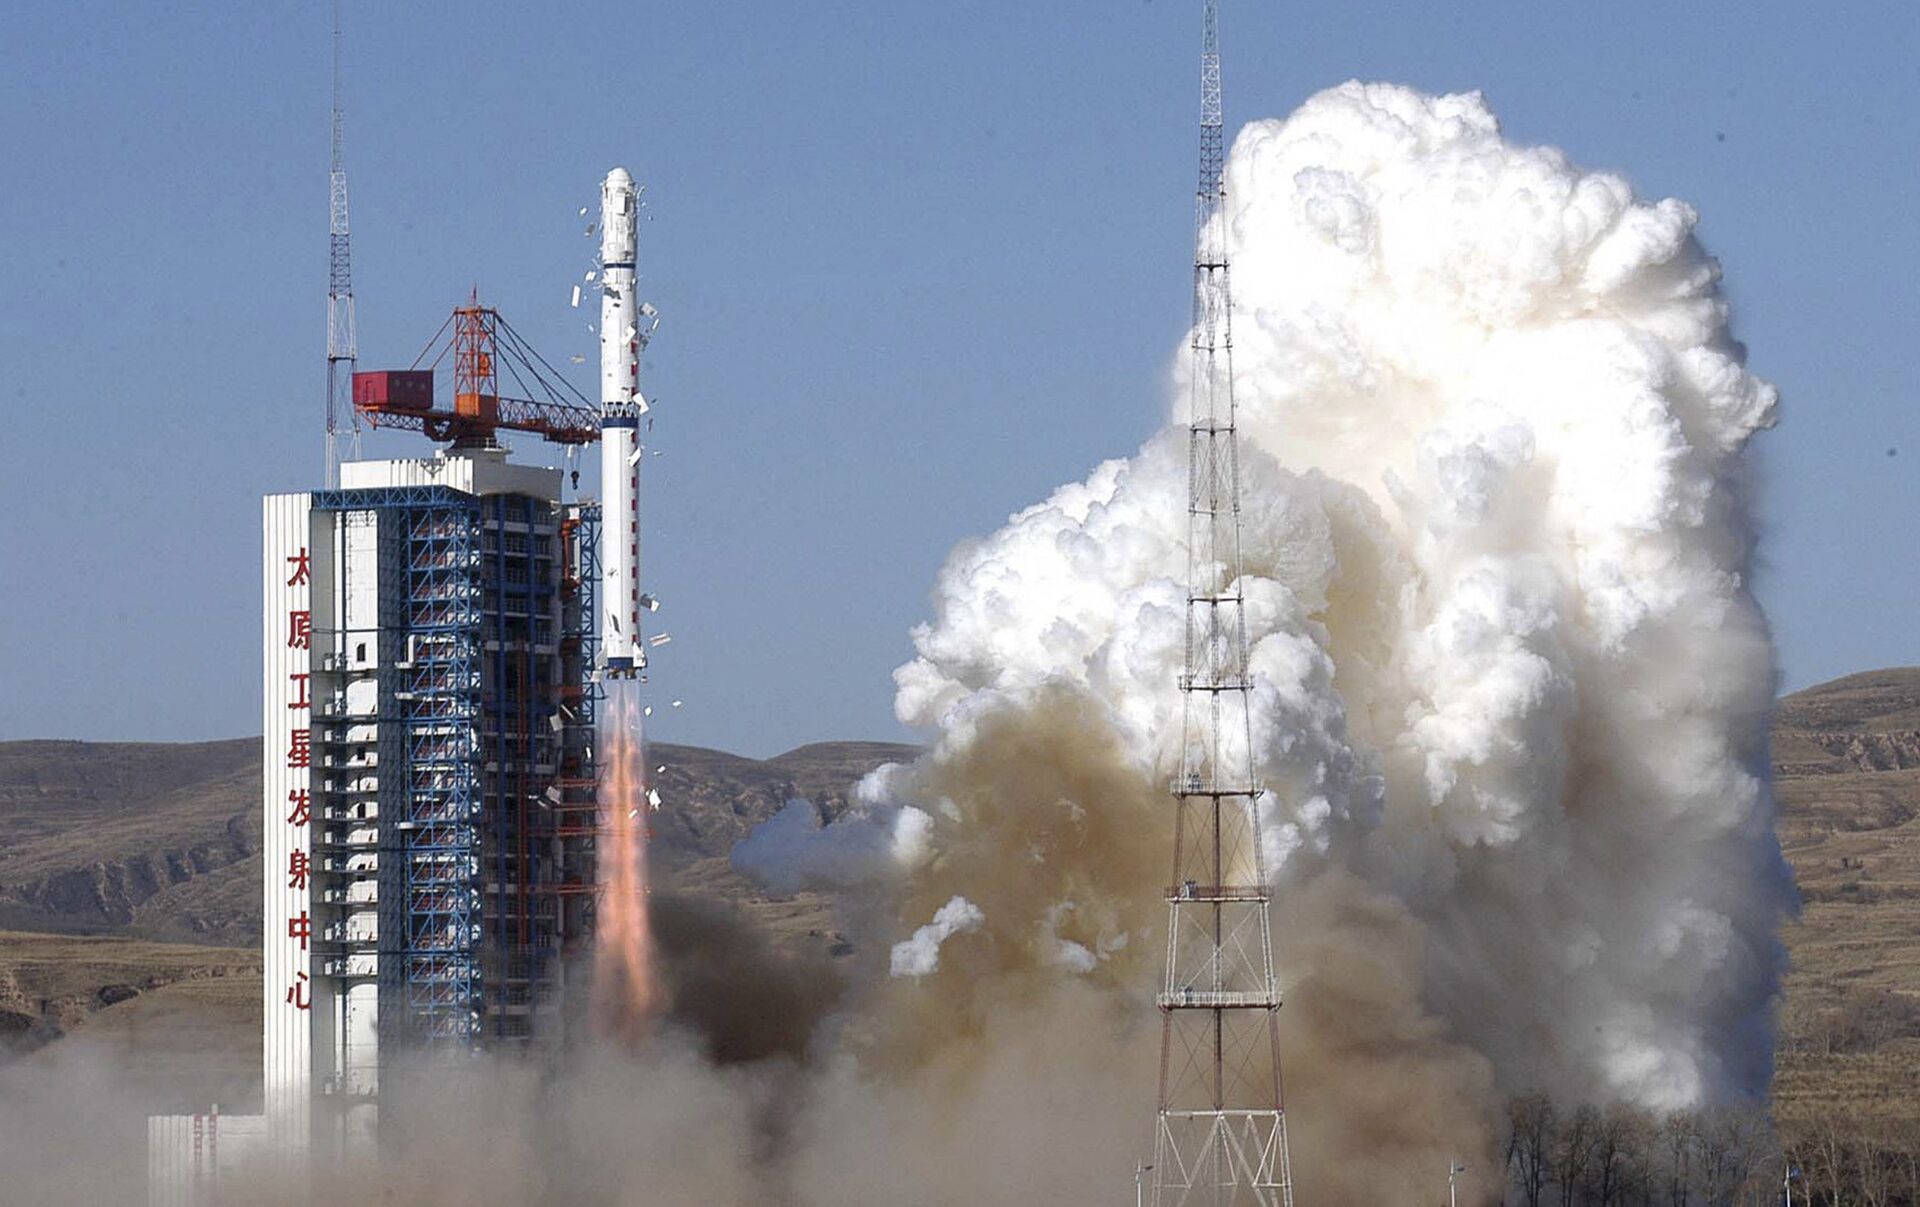 长征六号遥十运载火箭发射十六颗卫星主要用于大气成像等